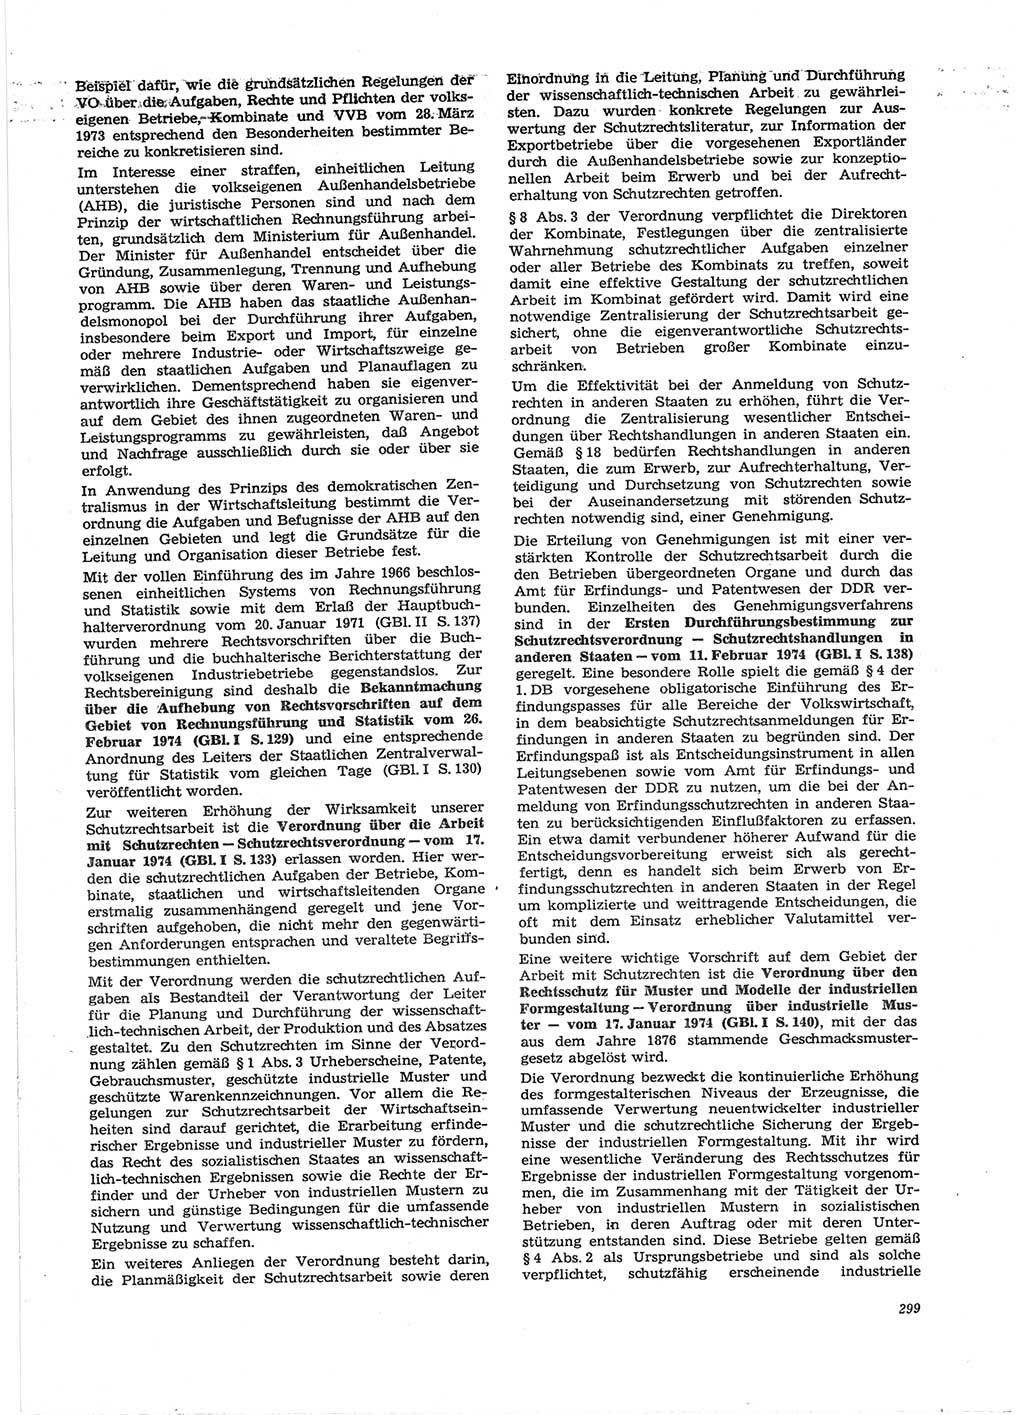 Neue Justiz (NJ), Zeitschrift für Recht und Rechtswissenschaft [Deutsche Demokratische Republik (DDR)], 28. Jahrgang 1974, Seite 299 (NJ DDR 1974, S. 299)